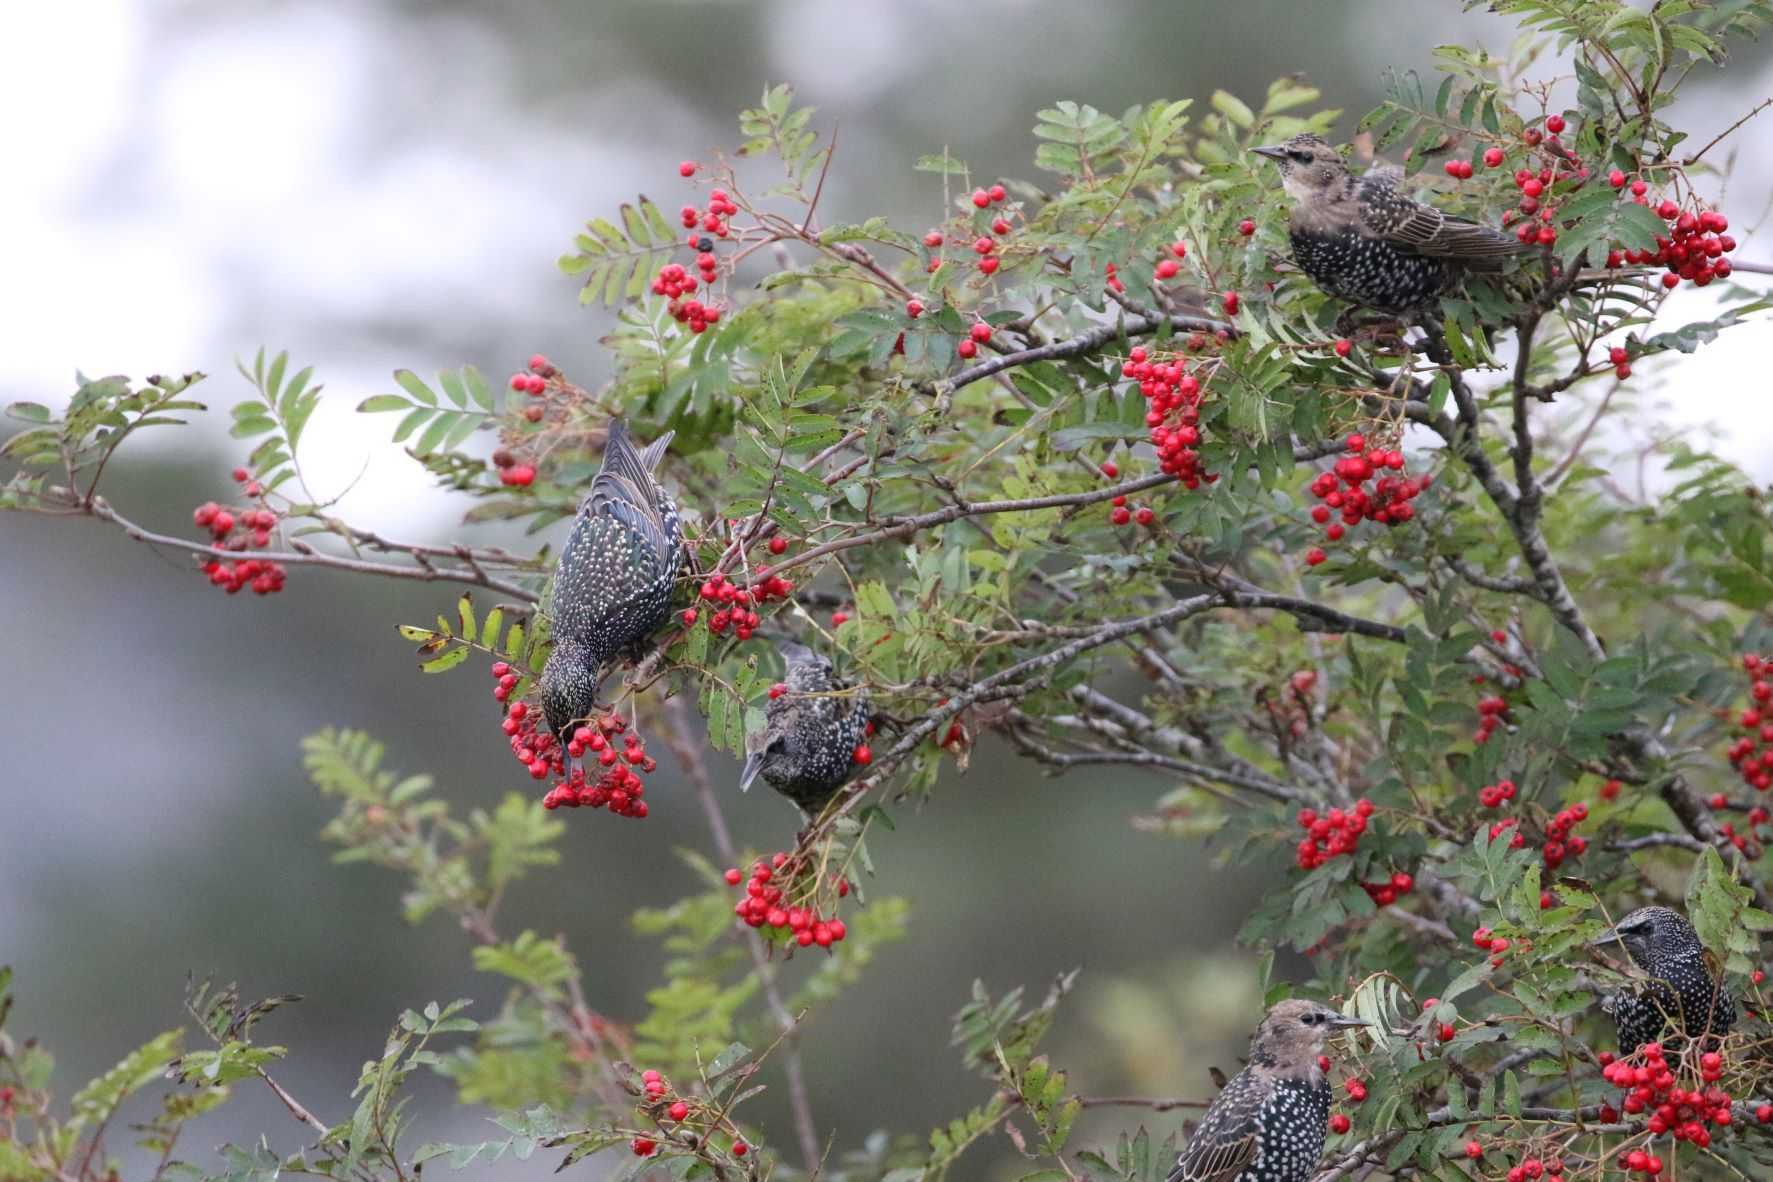 Starlings on Rowan berries